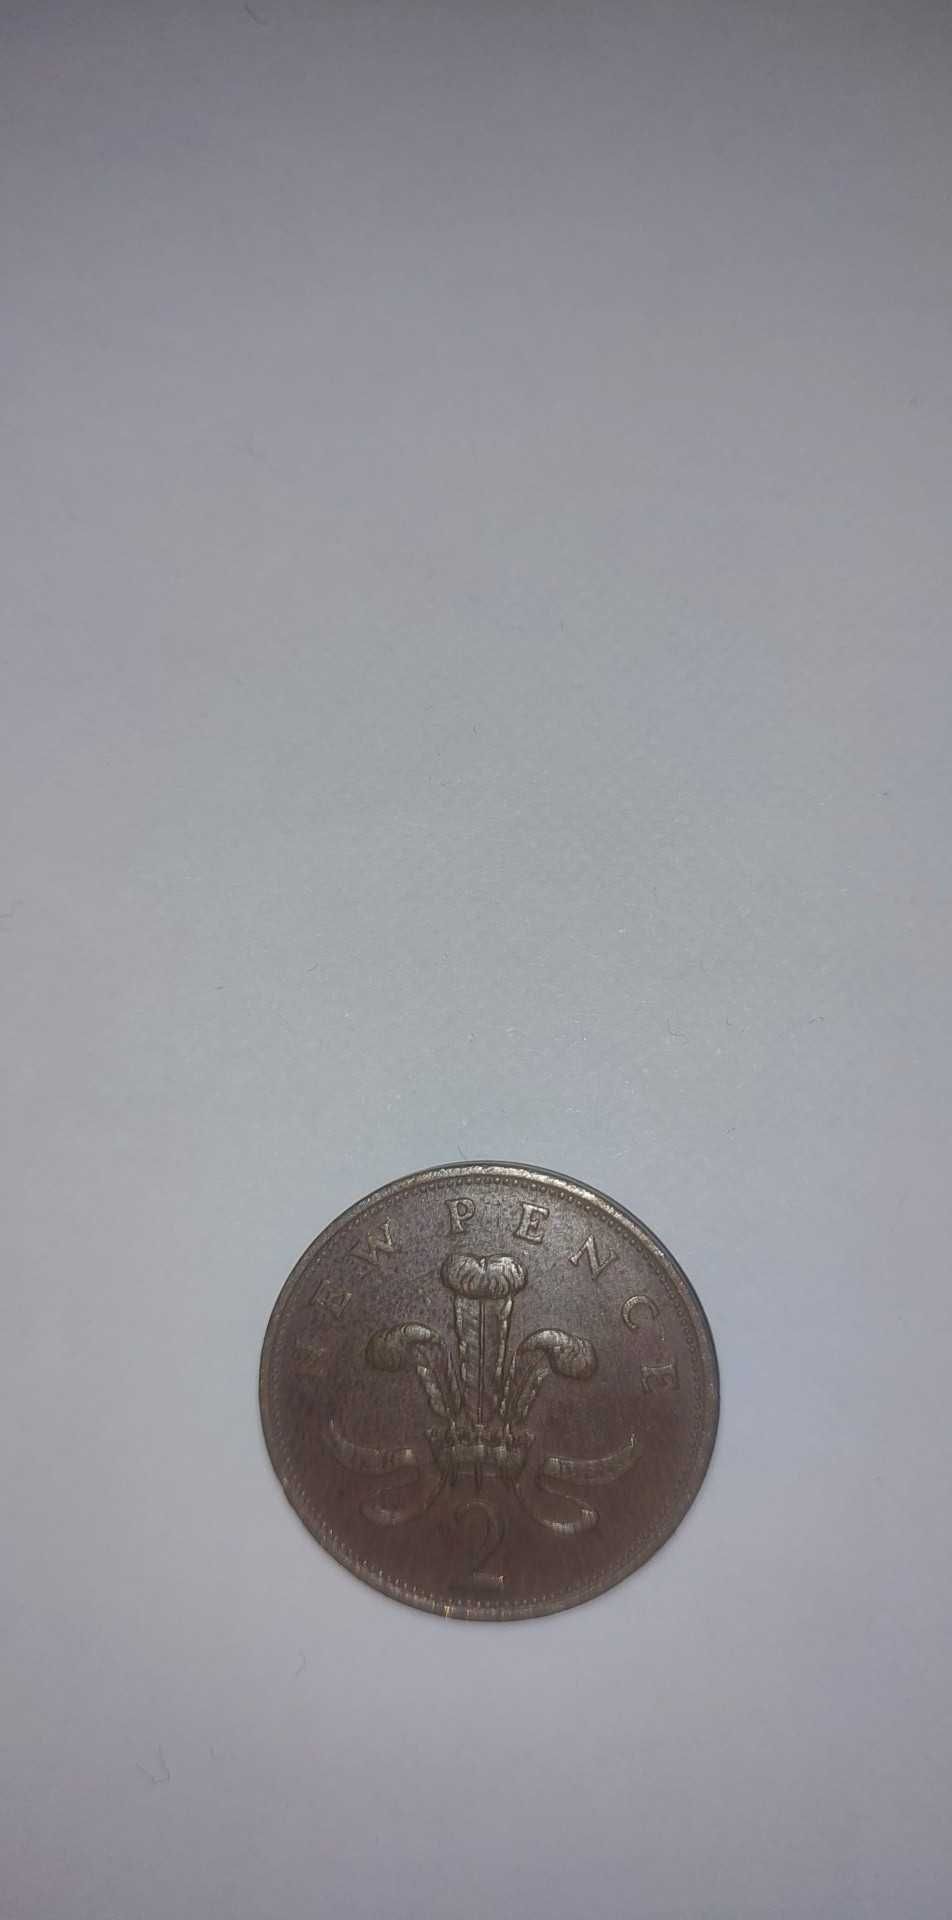 Monede  2 New Pence 1971,1981, plus alti ani !